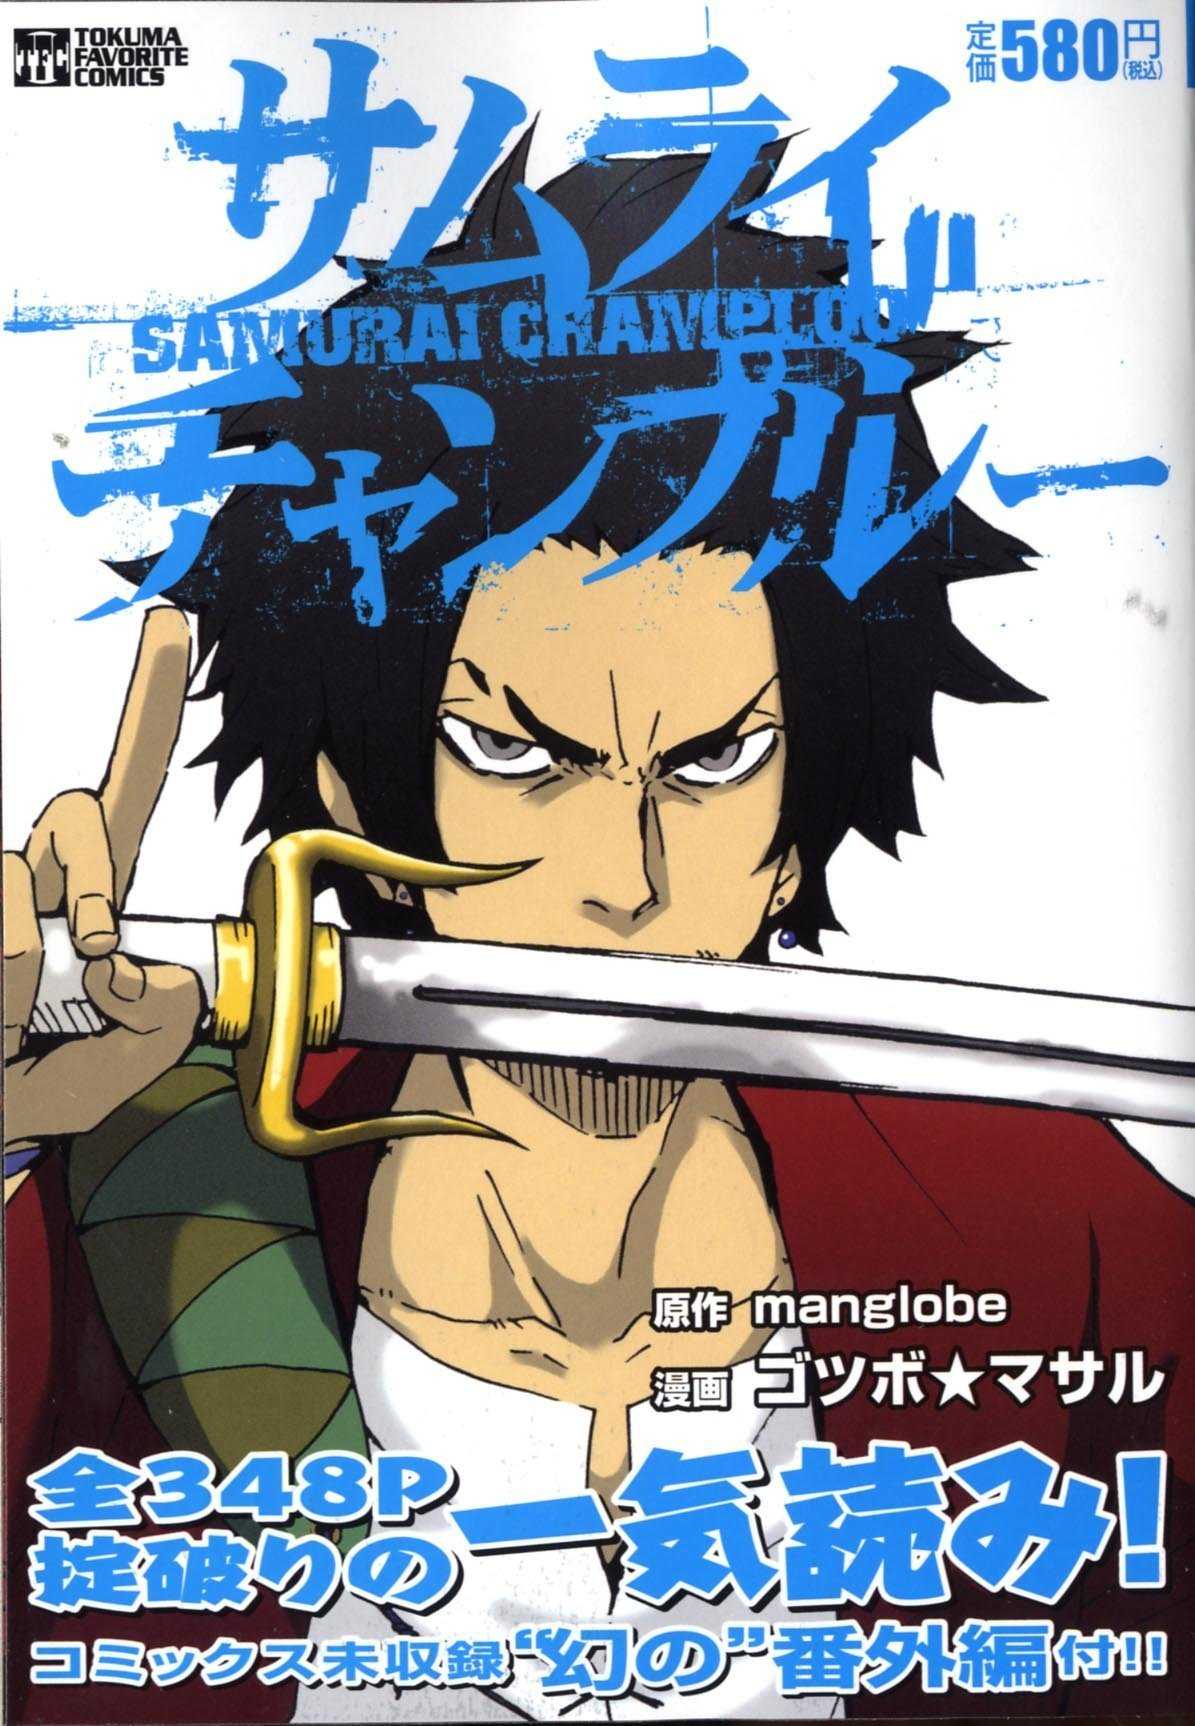 Samurai Champloo, Volume 1 by Masaru Gotsubo